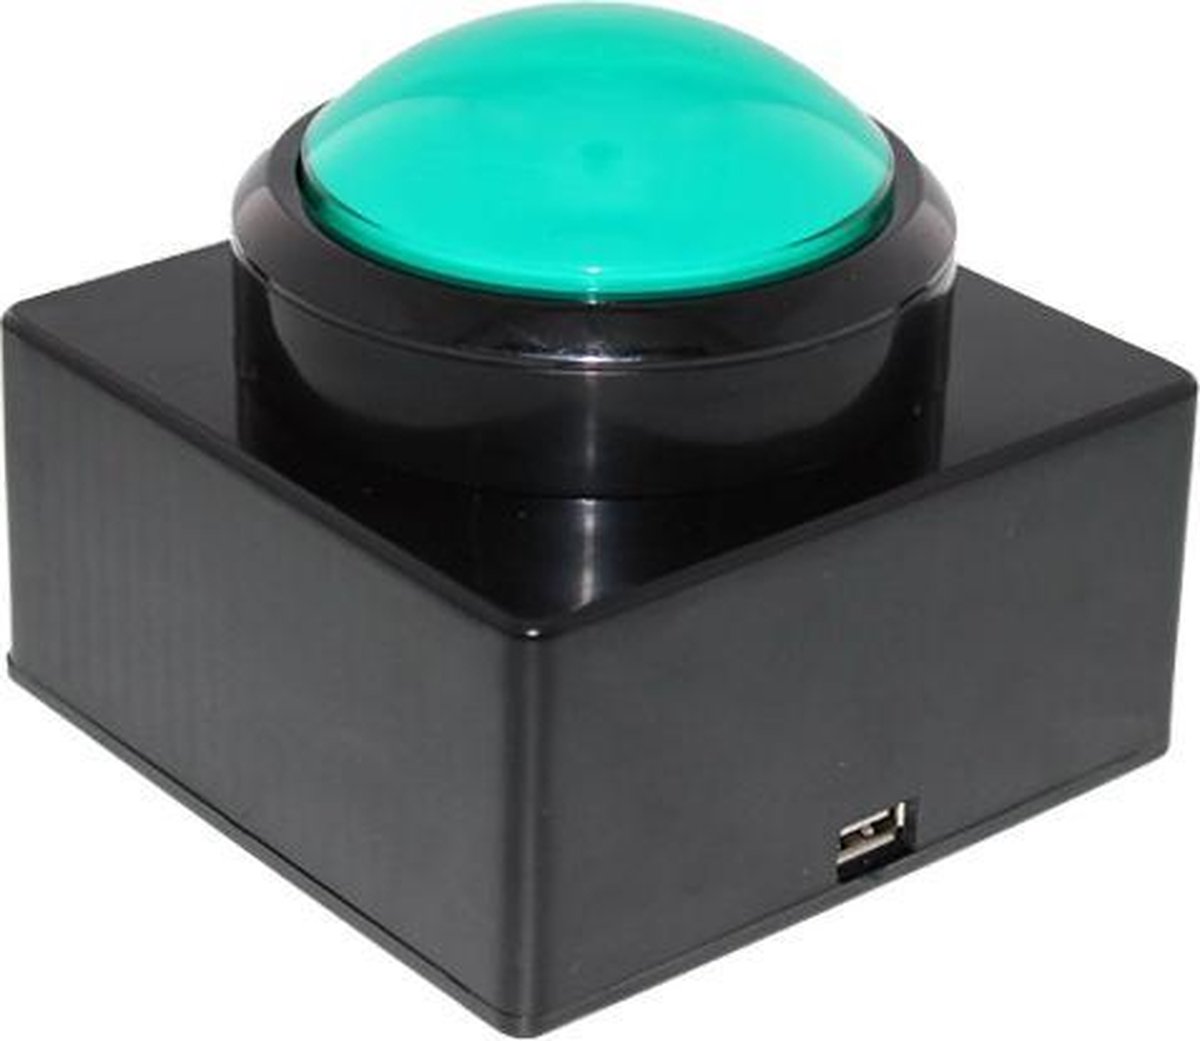 QuizTools USB buzzer drukknop verlicht, groen